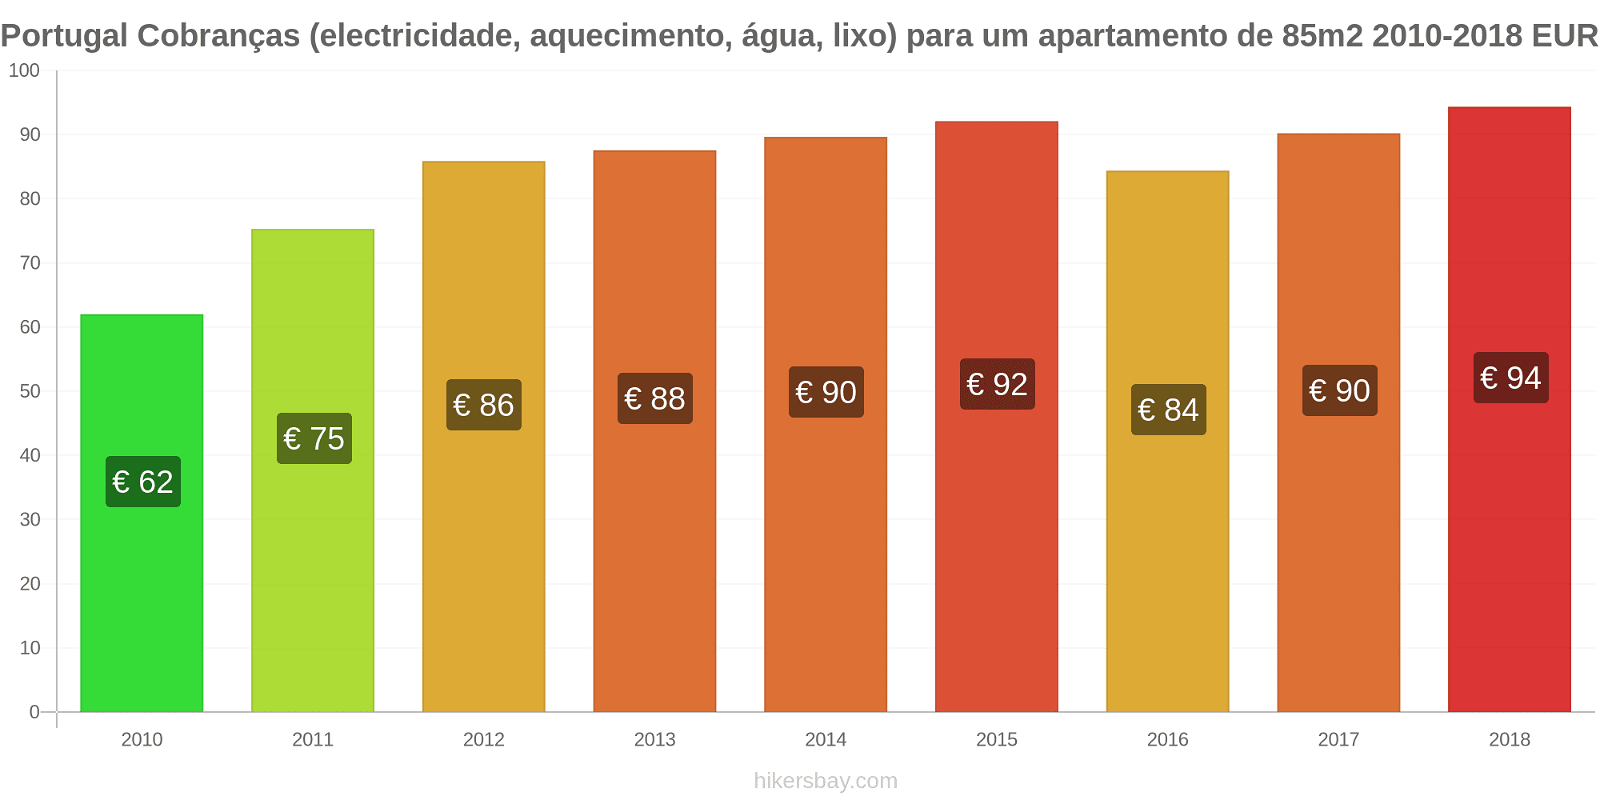 Portugal mudanças de preços Despesas (eletricidade, aquecimento, água, lixo) para um apartamento de 85m2 hikersbay.com